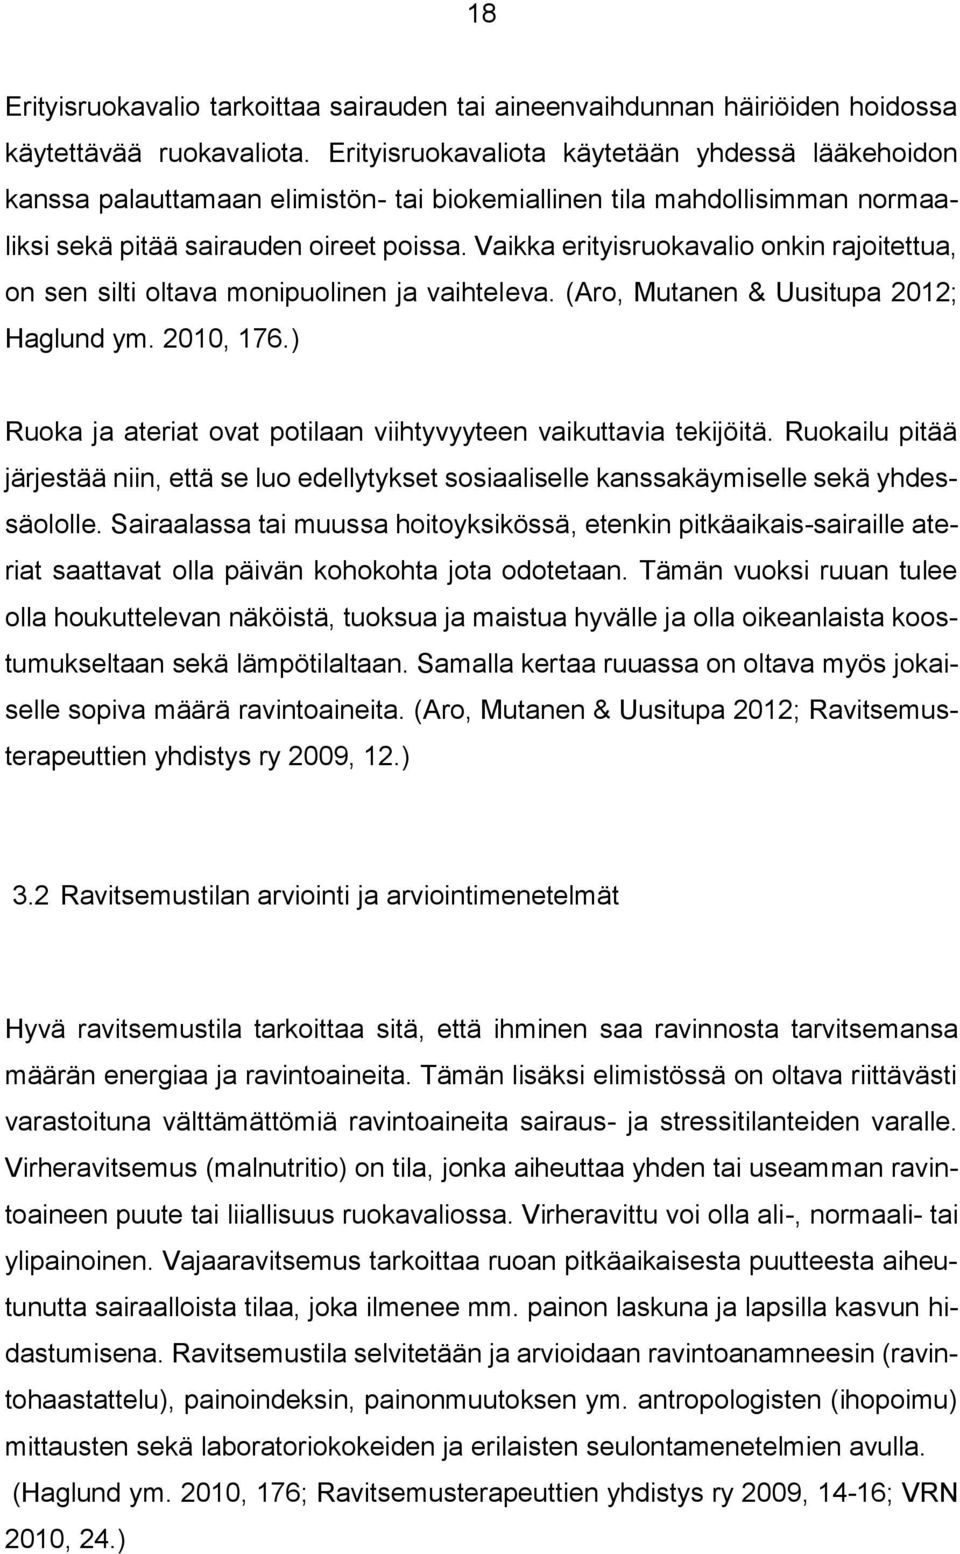 Vaikka erityisruokavalio onkin rajoitettua, on sen silti oltava monipuolinen ja vaihteleva. (Aro, Mutanen & Uusitupa 2012; Haglund ym. 2010, 176.